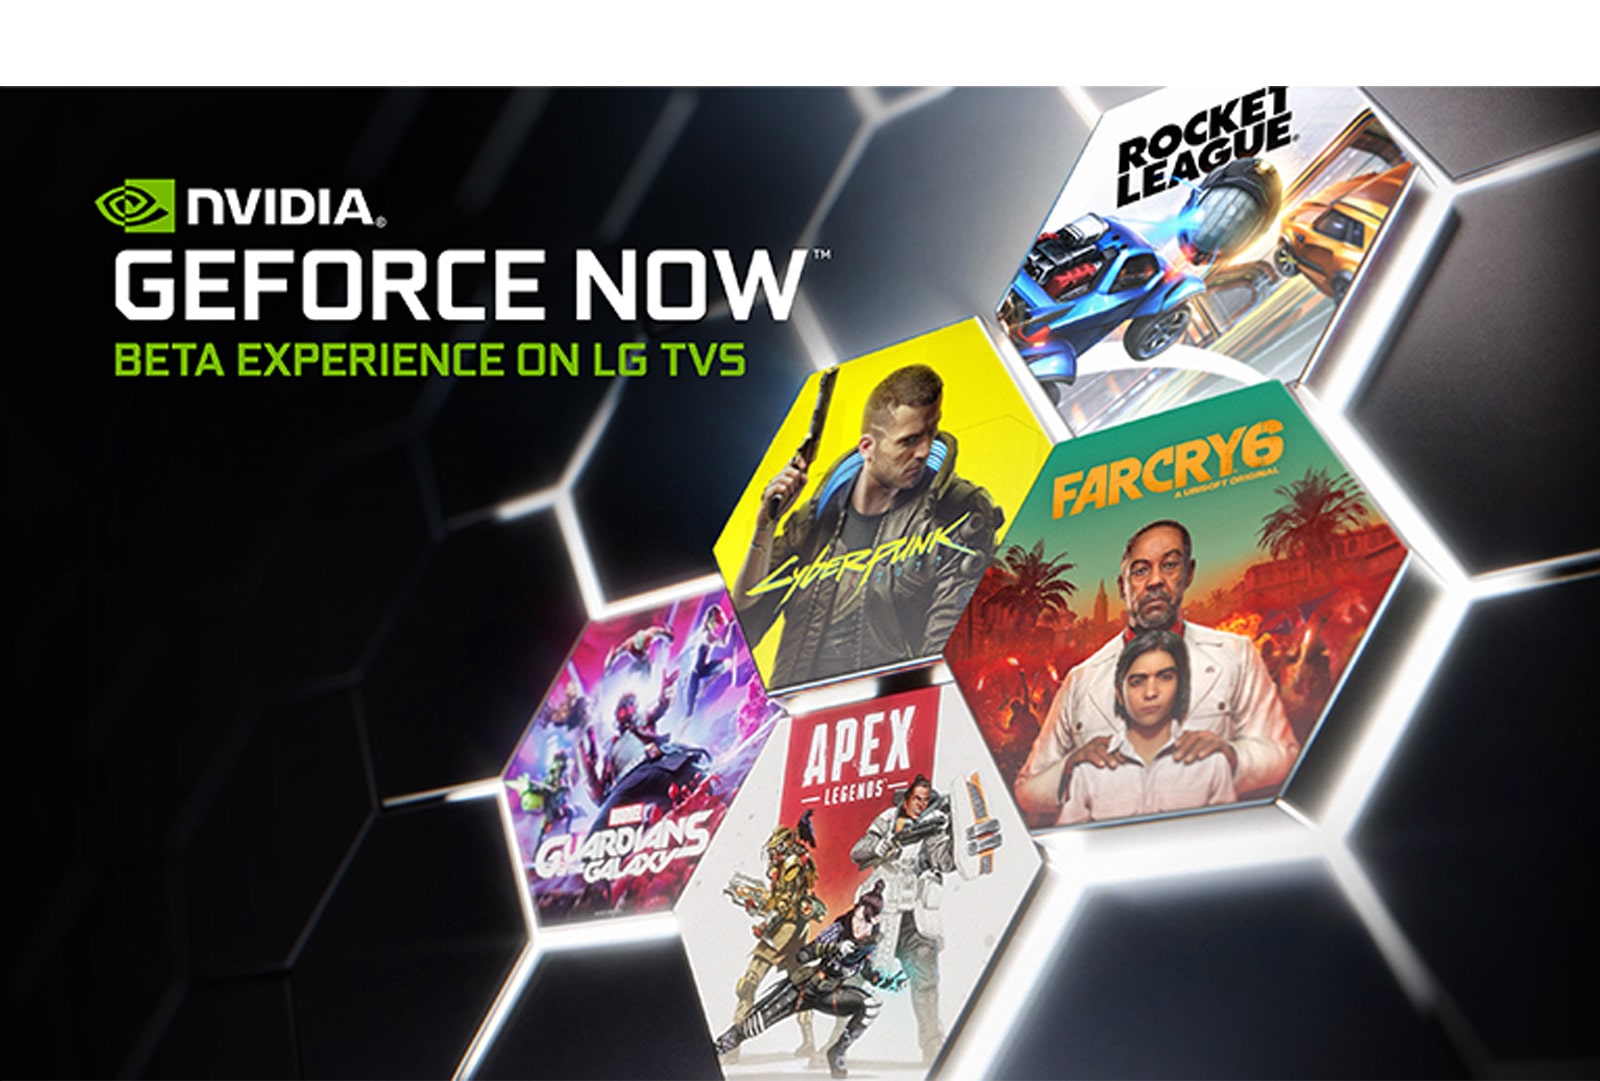 Una imagen con el logotipo de GeForce Now sobre un fondo oscuro. Se muestran las portadas y los títulos de varios juegos populares.